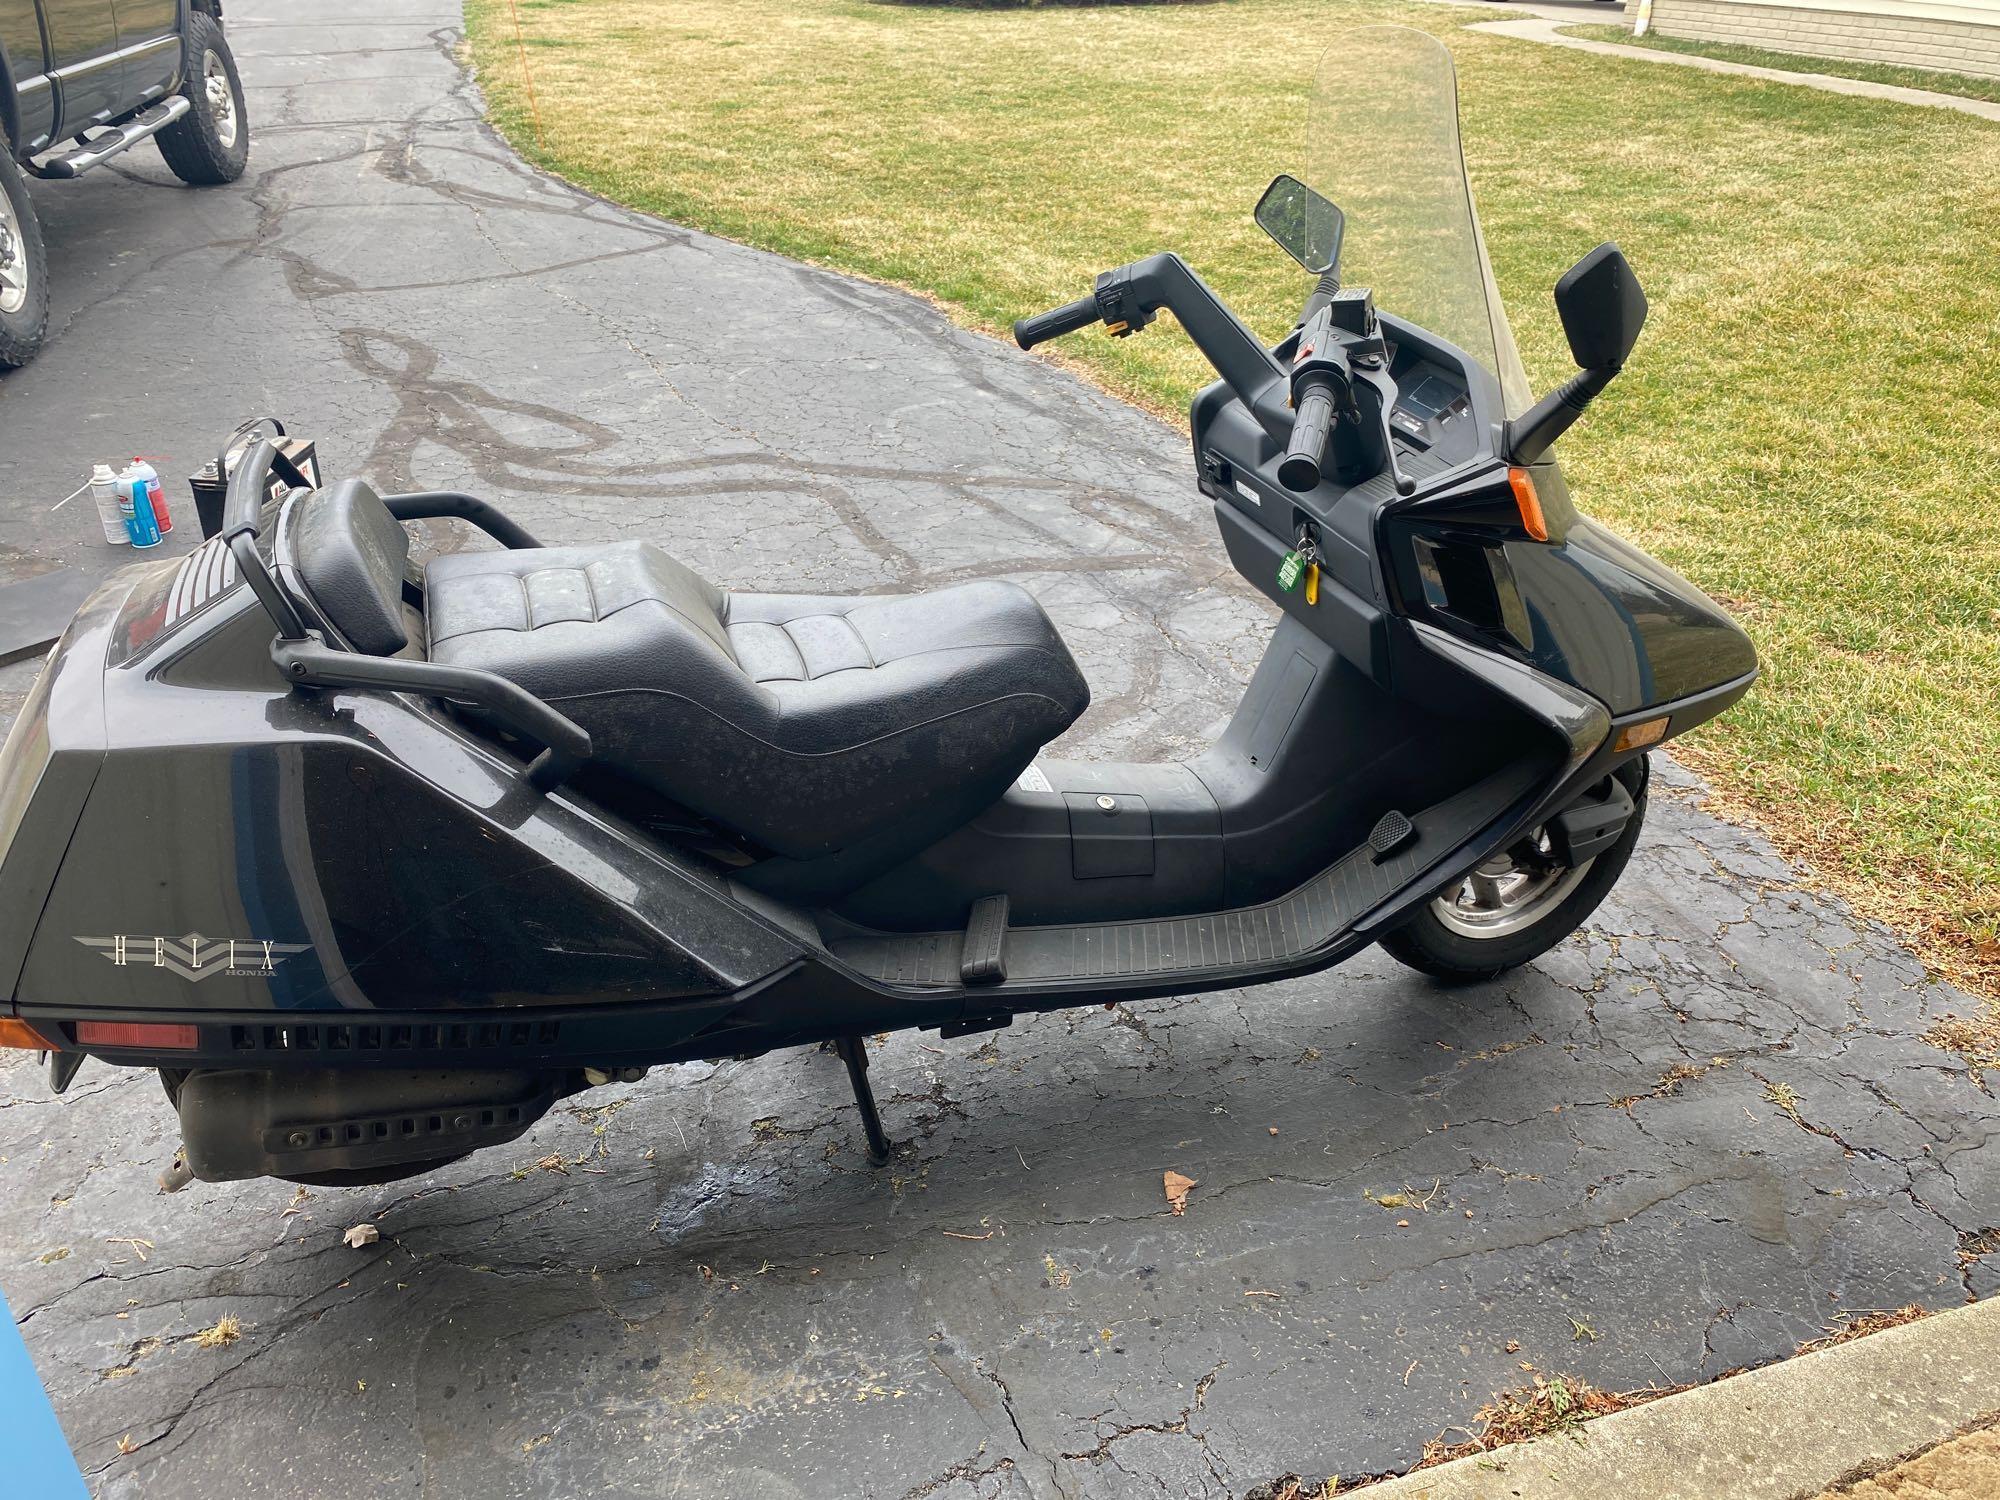 2001 Honda Helix Motorcycle